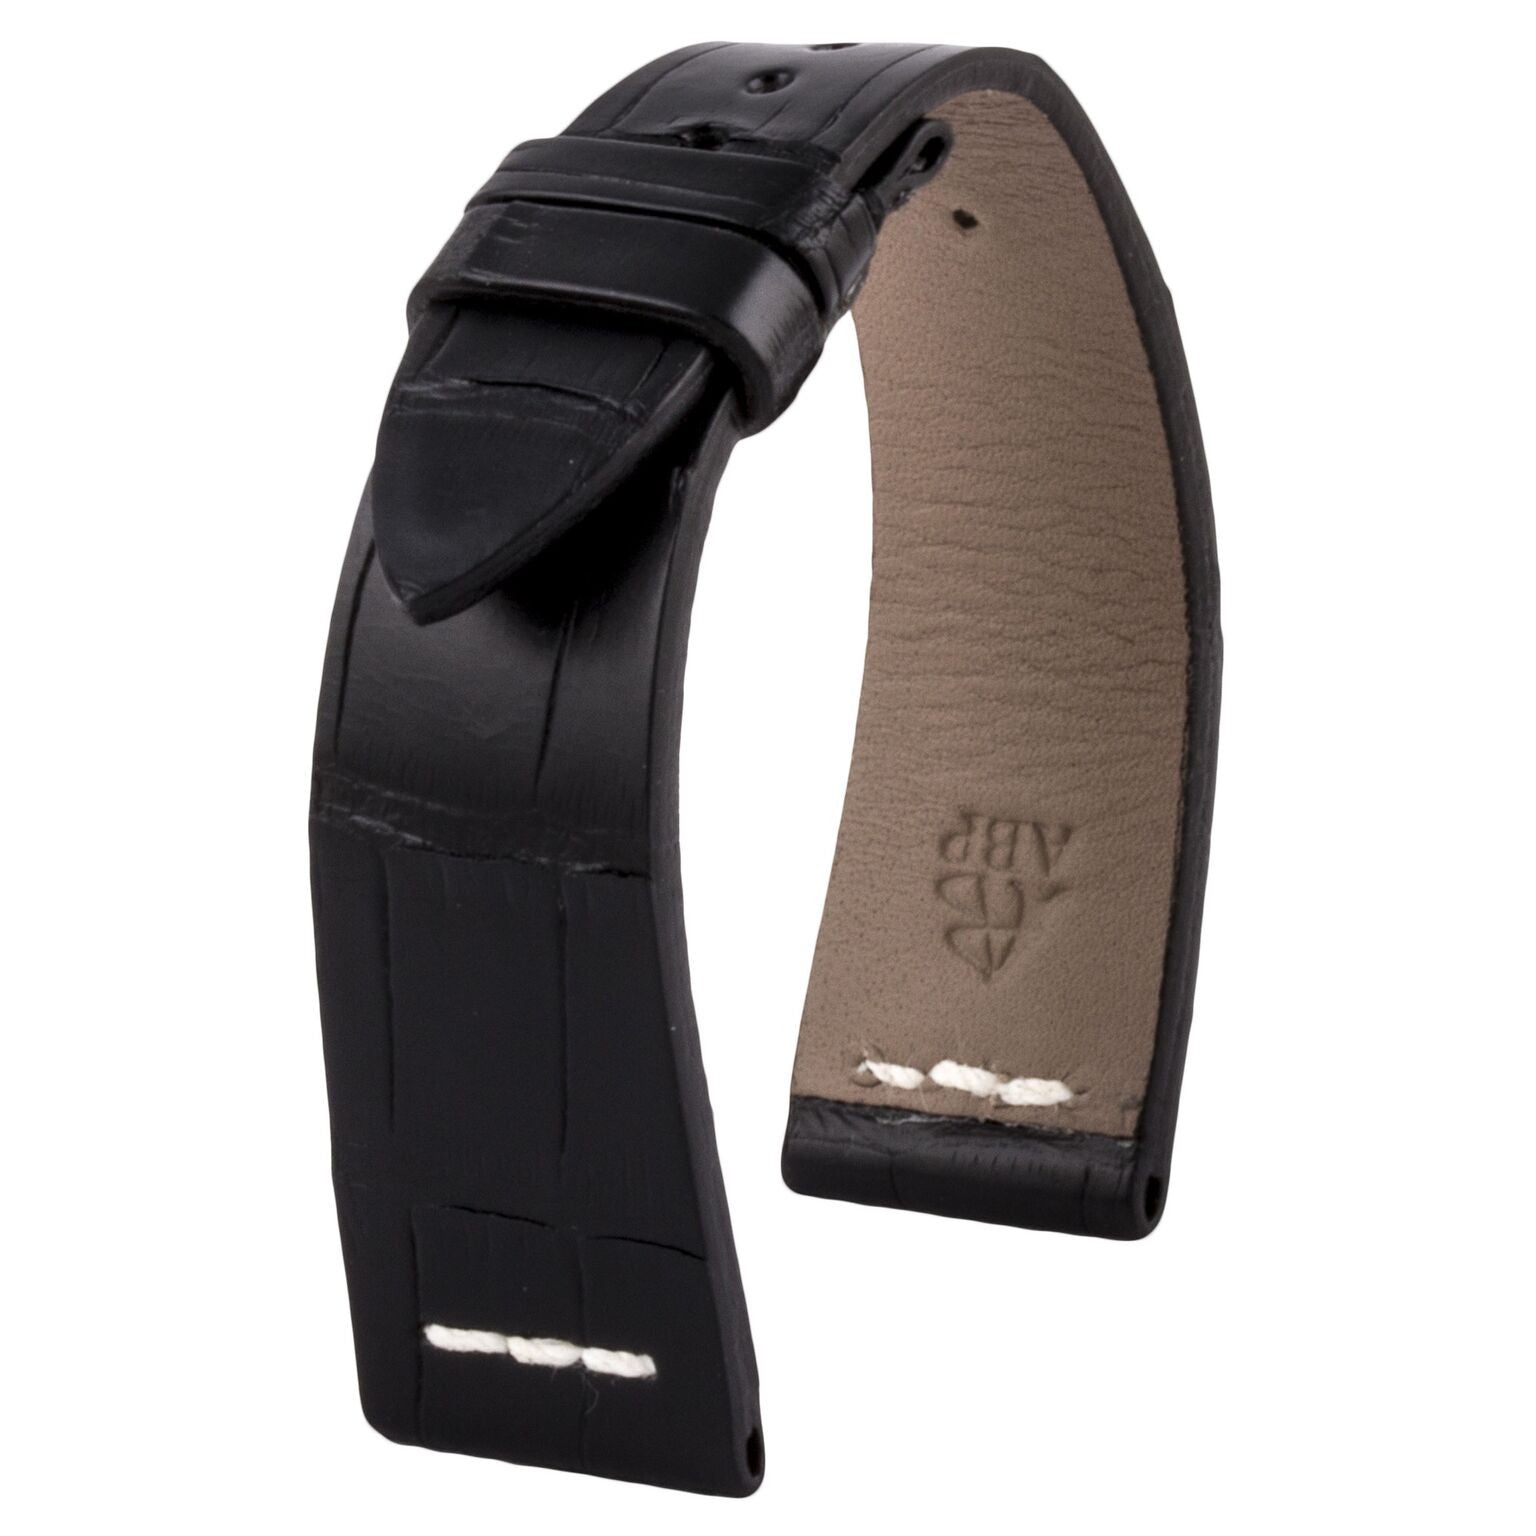 Rolex Sea Dweller - Bracelet de montre cuir - Alligator (noir, marron foncé) - watch band leather strap - ABP Concept -